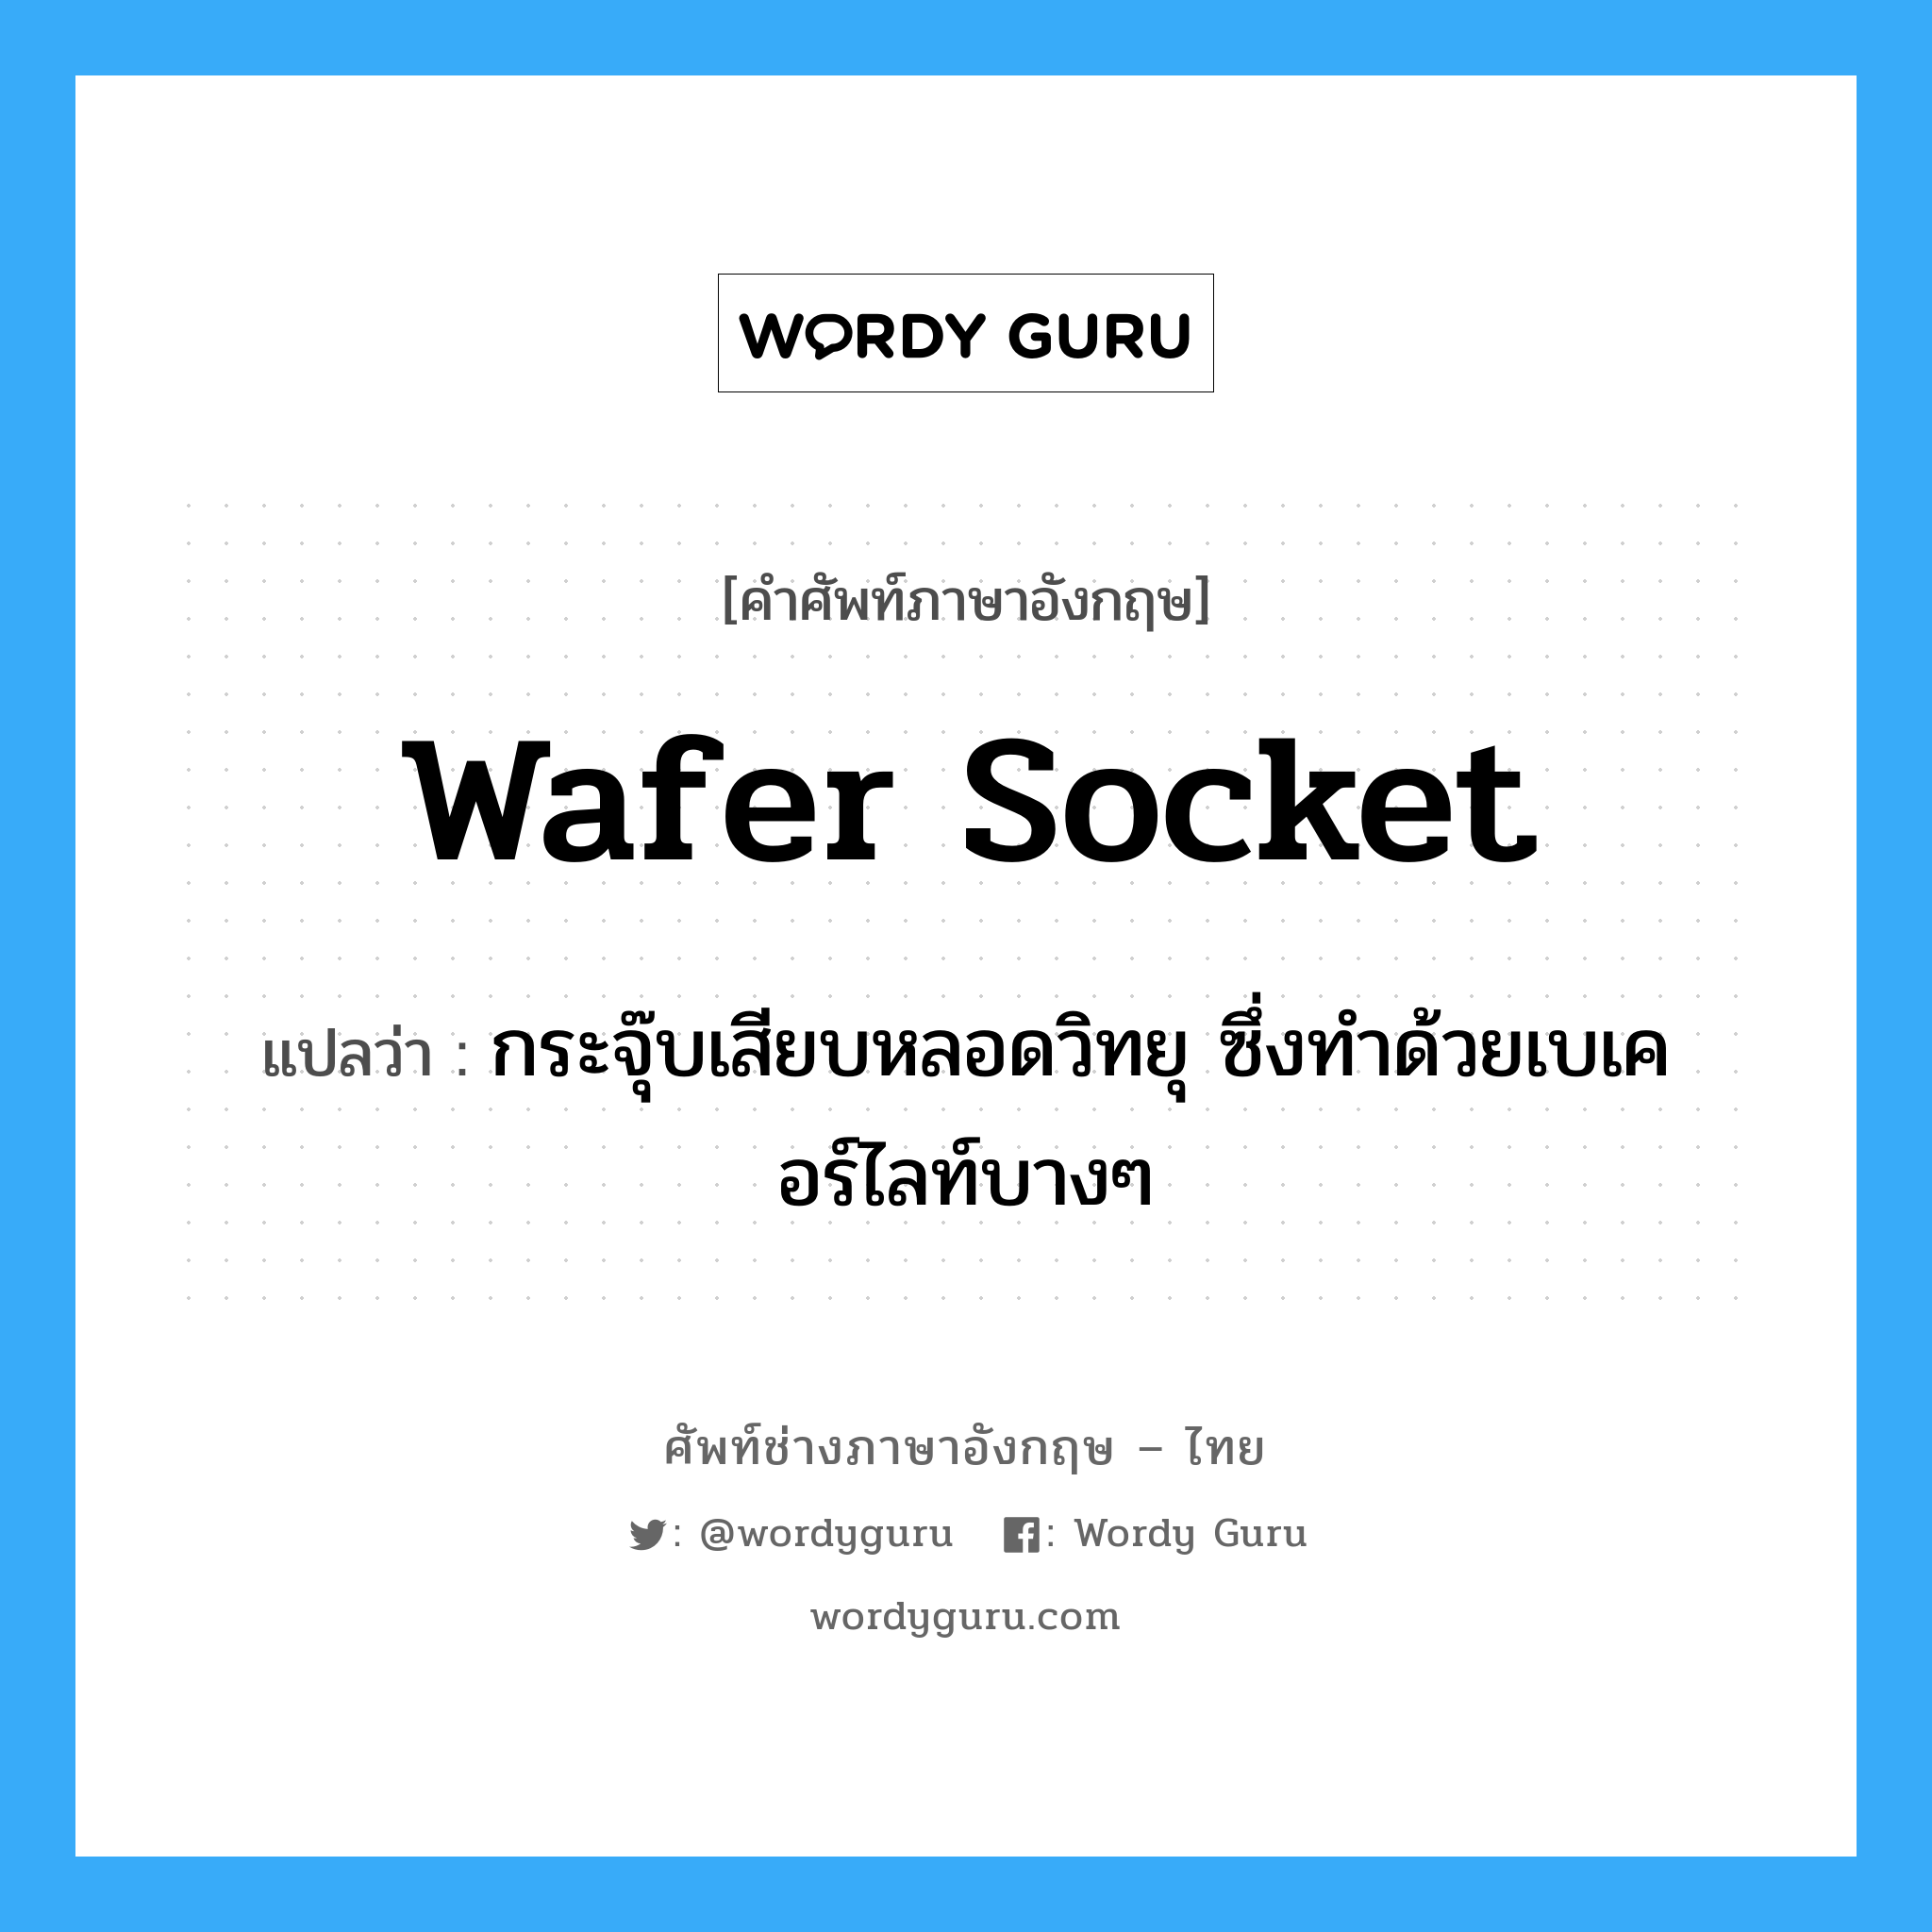 wafer socket แปลว่า?, คำศัพท์ช่างภาษาอังกฤษ - ไทย wafer socket คำศัพท์ภาษาอังกฤษ wafer socket แปลว่า กระจุ๊บเสียบหลอดวิทยุ ซึ่งทำด้วยเบเคอร์ไลท์บางๆ